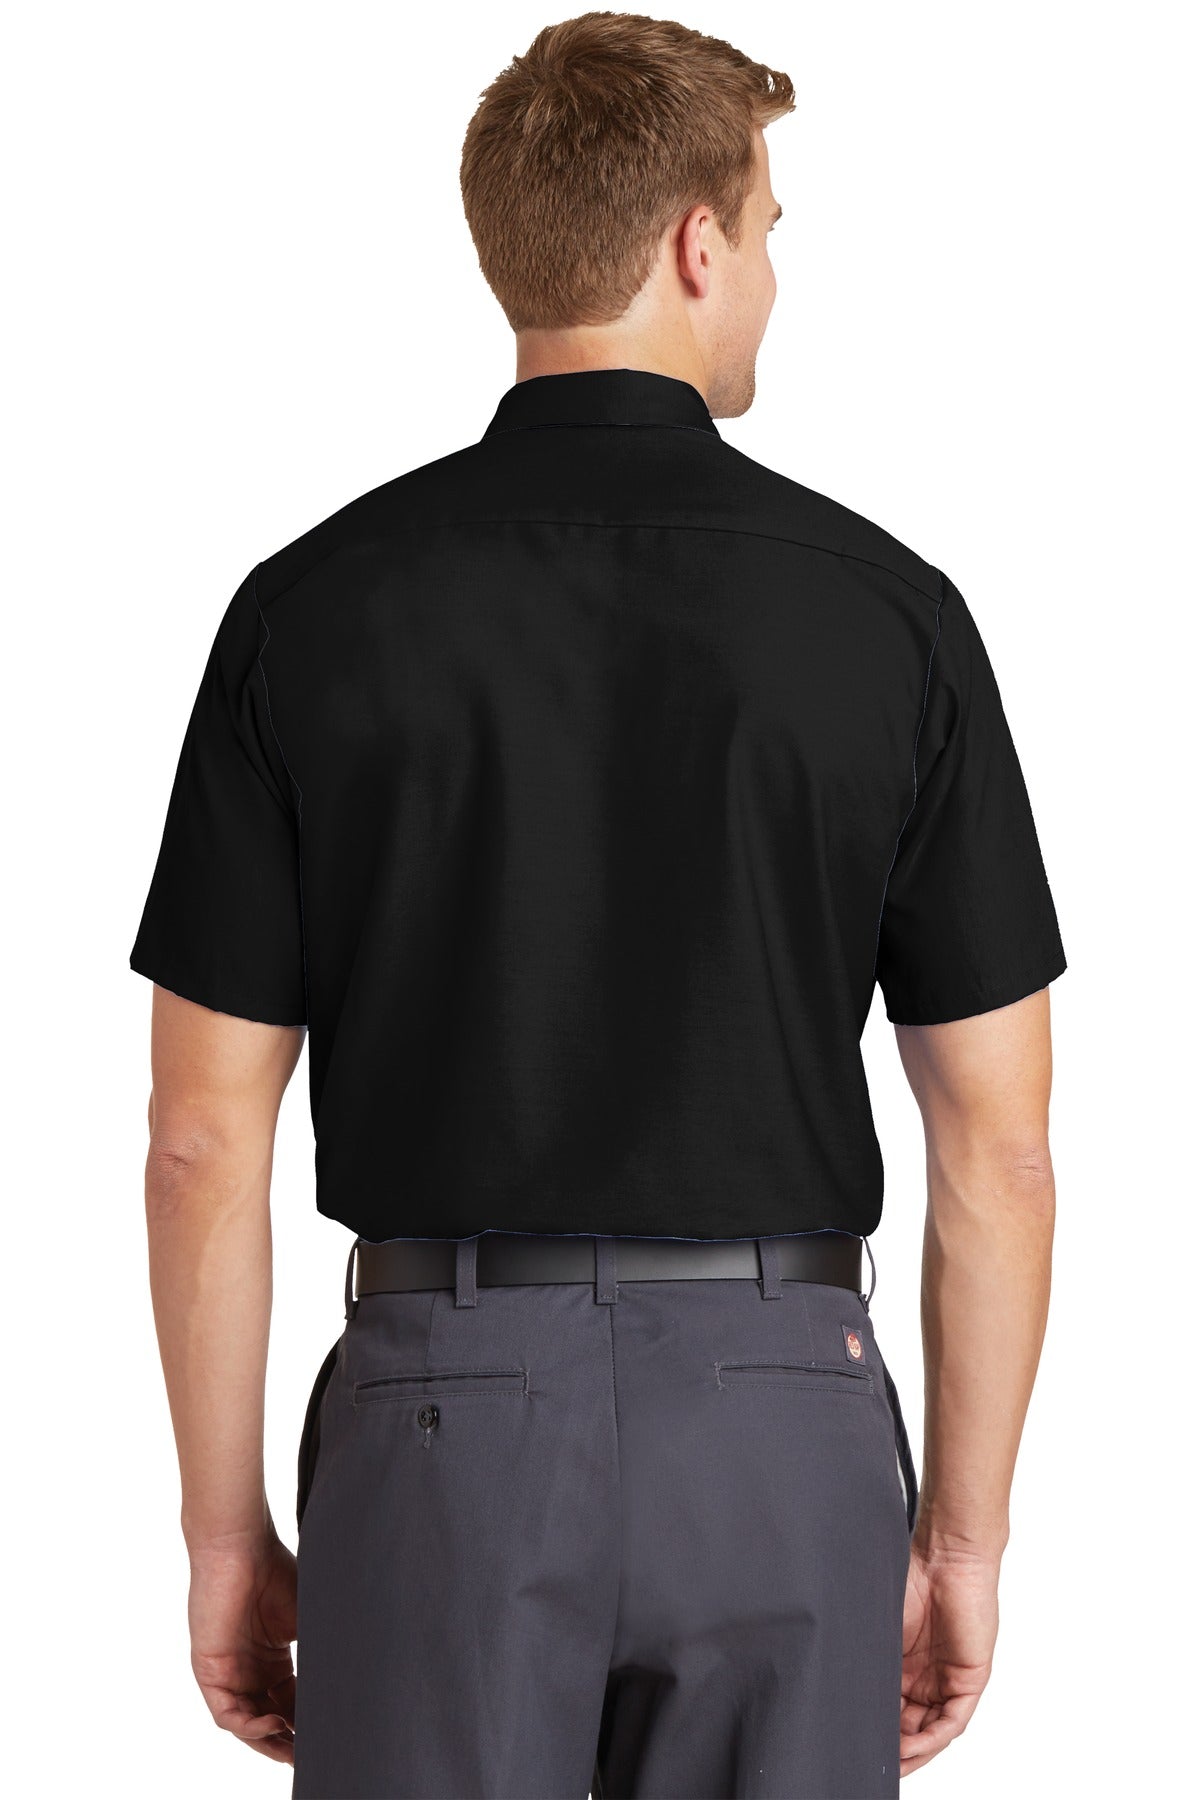 Red Kap Long Size Short Sleeve Industrial Work Shirt